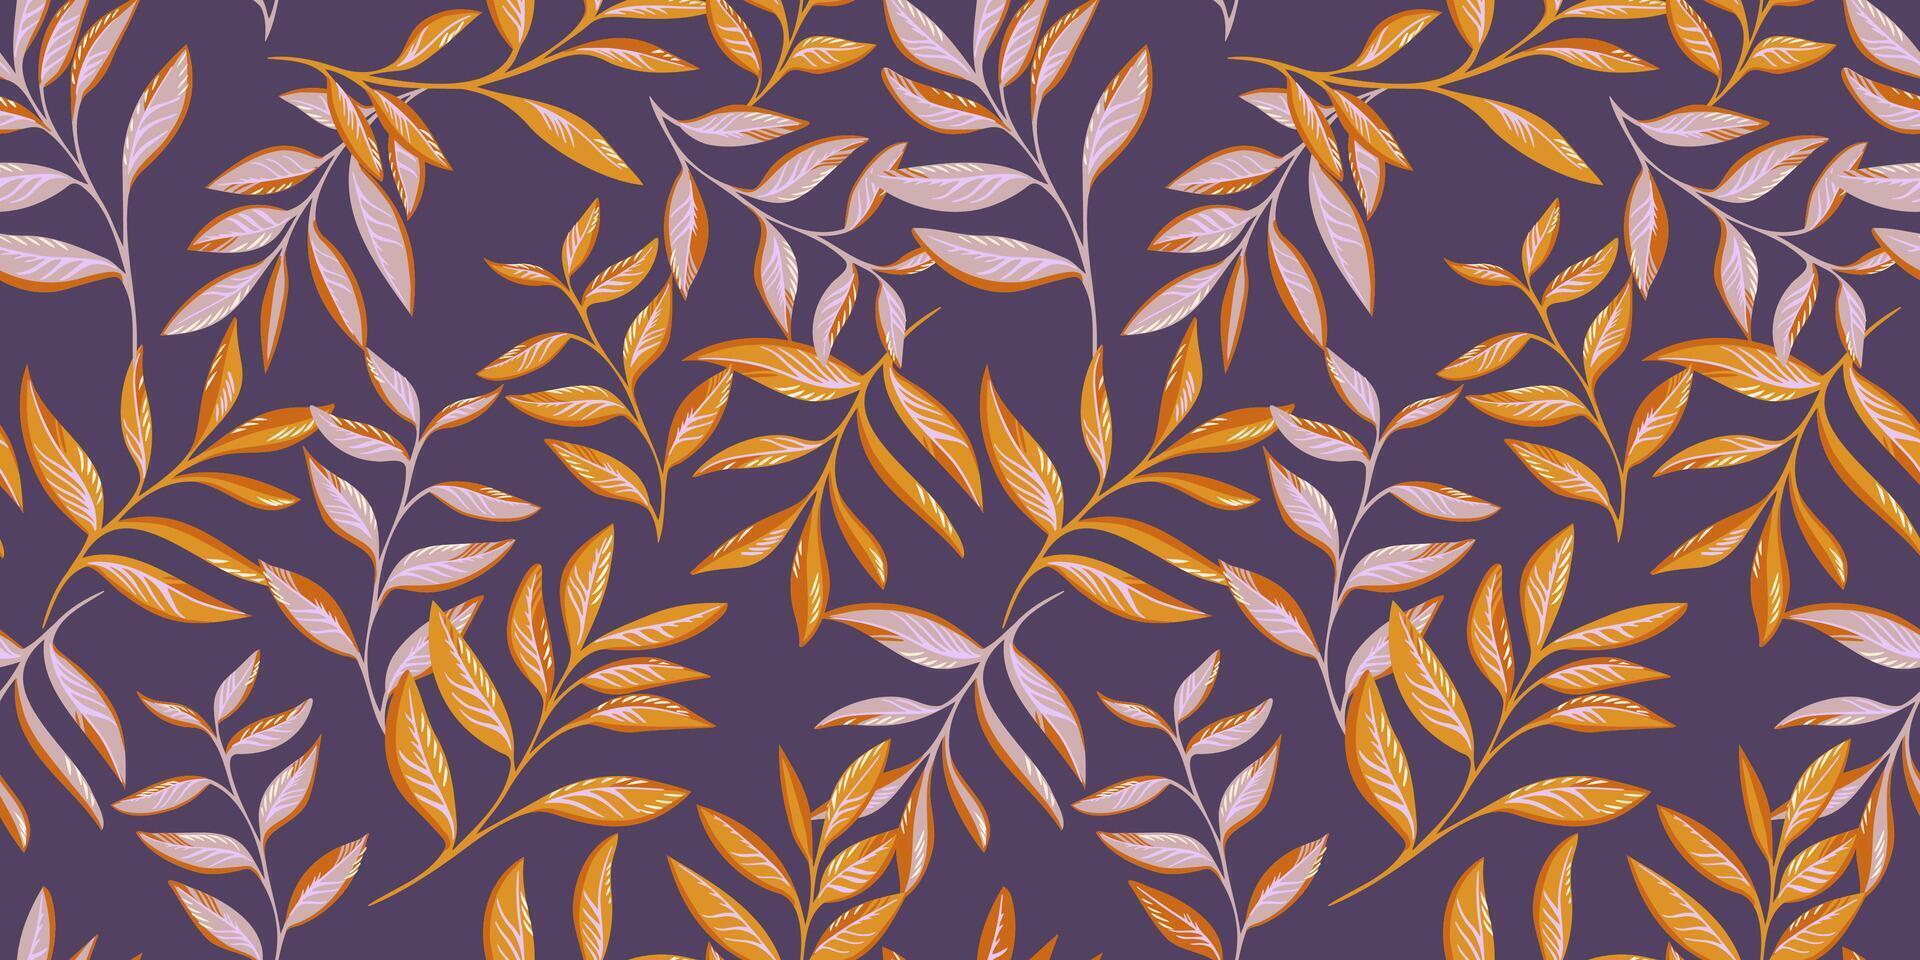 Eleganz Gold Blätter Geäst nahtlos Muster. Vektor Hand gezeichnet skizzieren. künstlerisch stilisiert Stängel Blatt drucken. abstrakt botanisch Blumen- auf ein violett Hintergrund. Design zum Mode, Stoff, Hintergrund.